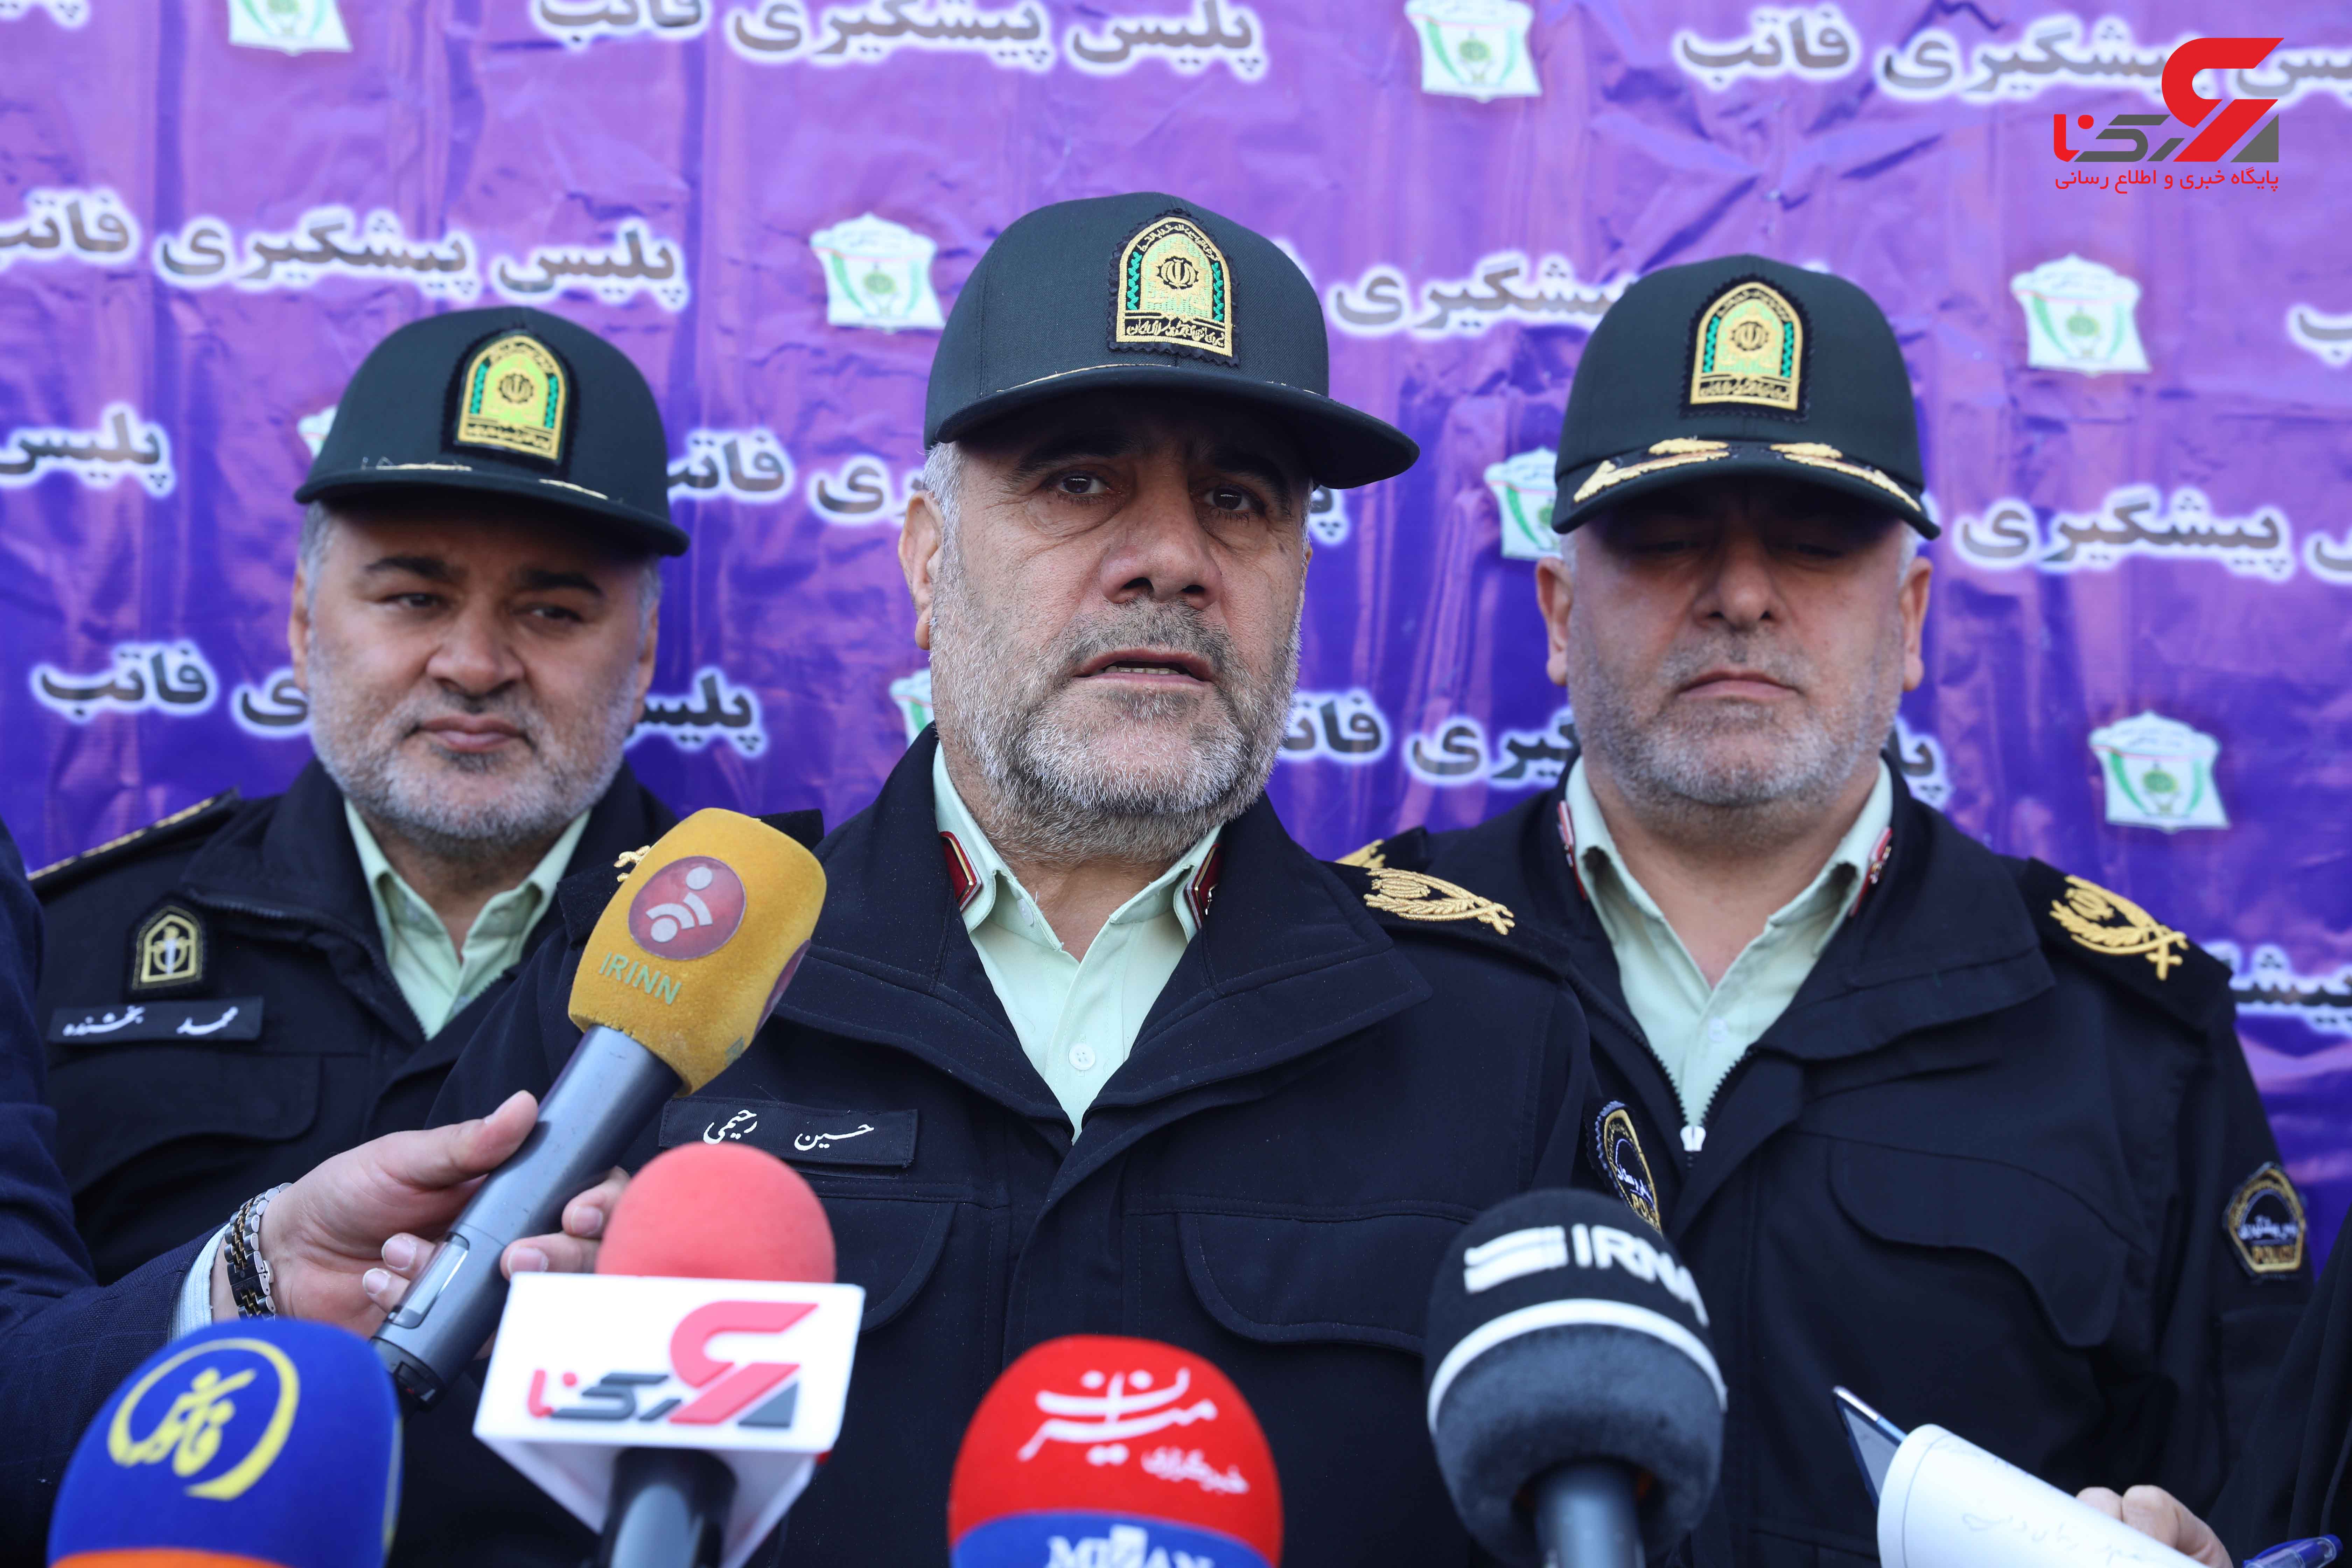 بیست و سومین طرح رعد پلیس پیشگیری پایتخت با تلاش مأموران پلیس پیشگیری تهران بزرگ اجرا شد.